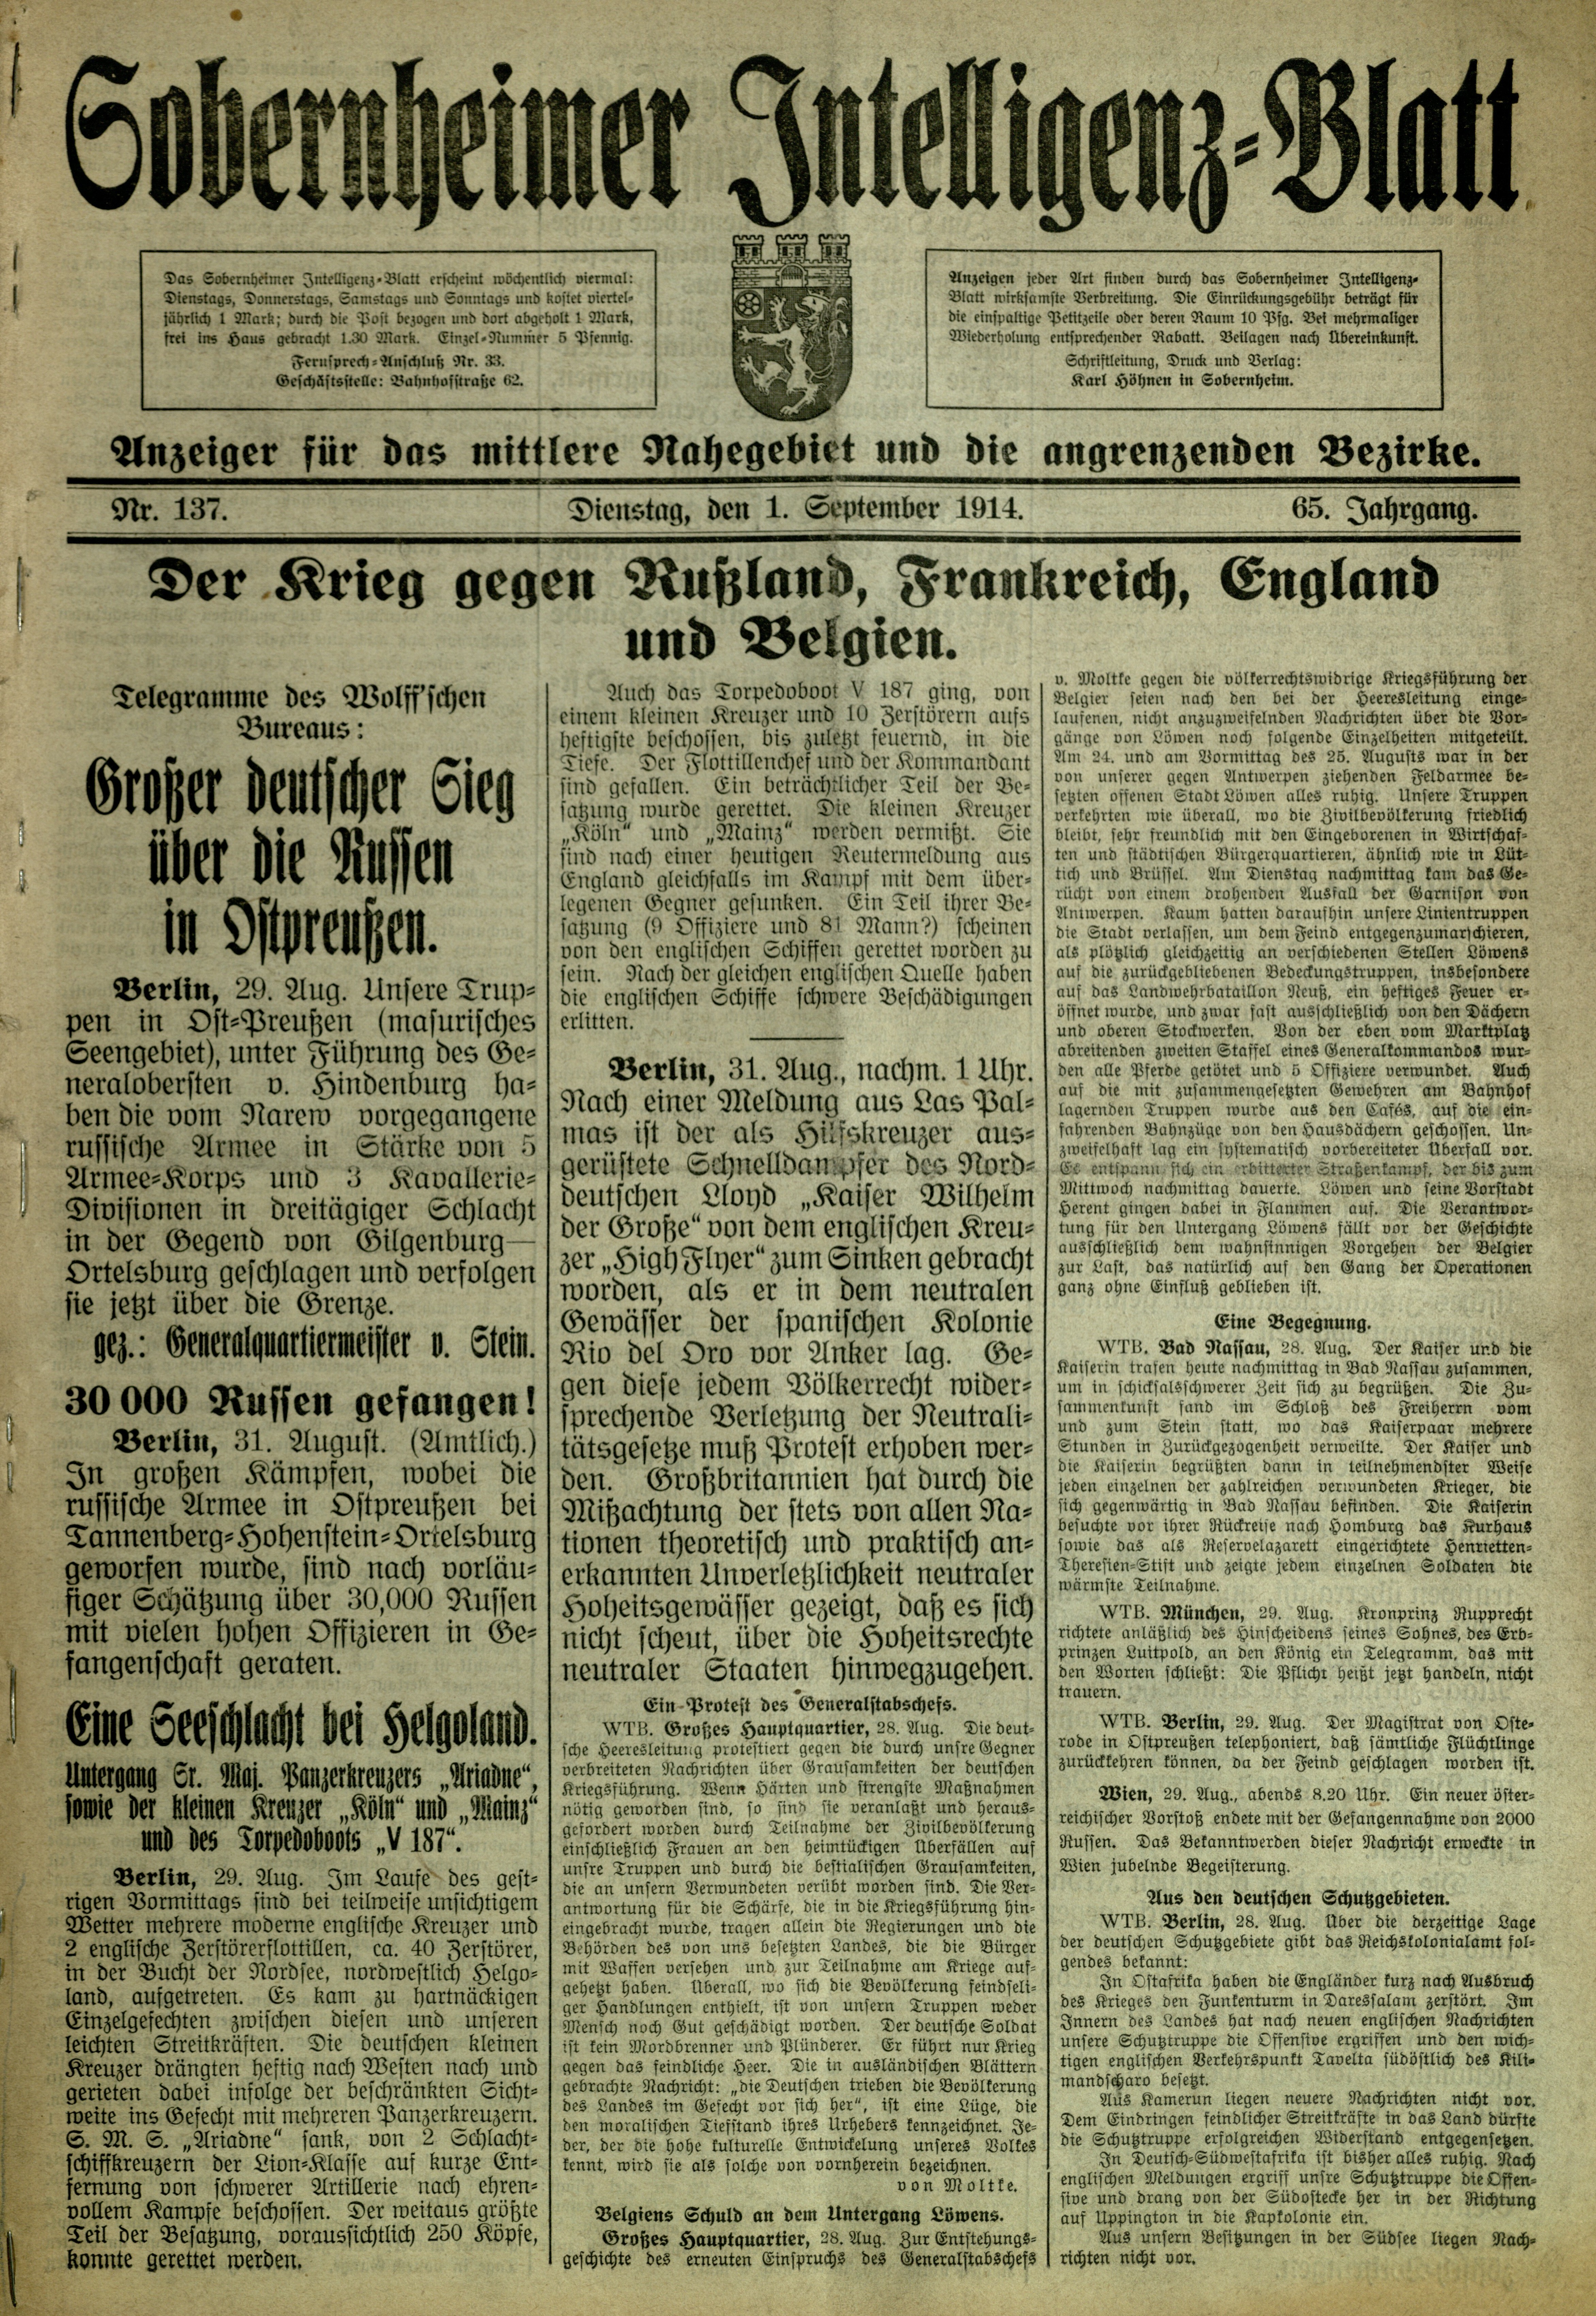 Zeitung: Sobernheimer Intelligenzblatt; September 1914, Jg. 65 Nr. 137 (Heimatmuseum Bad Sobernheim CC BY-NC-SA)